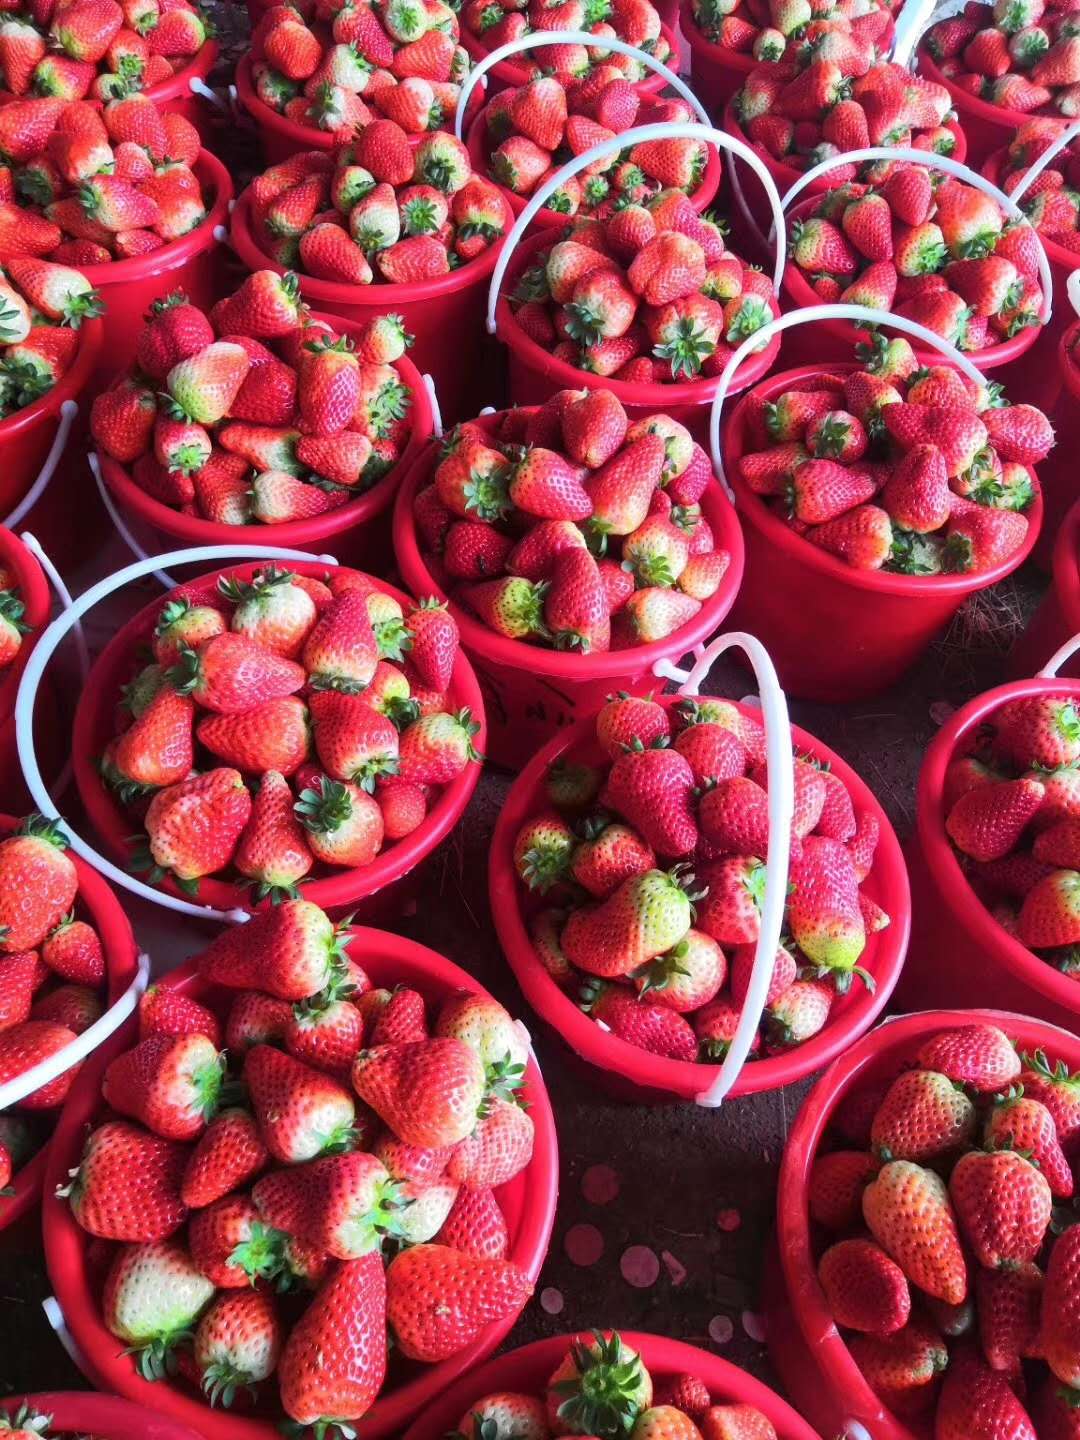 草莓苗成苗一亩苗价格、妙香草莓苗一亩苗价格